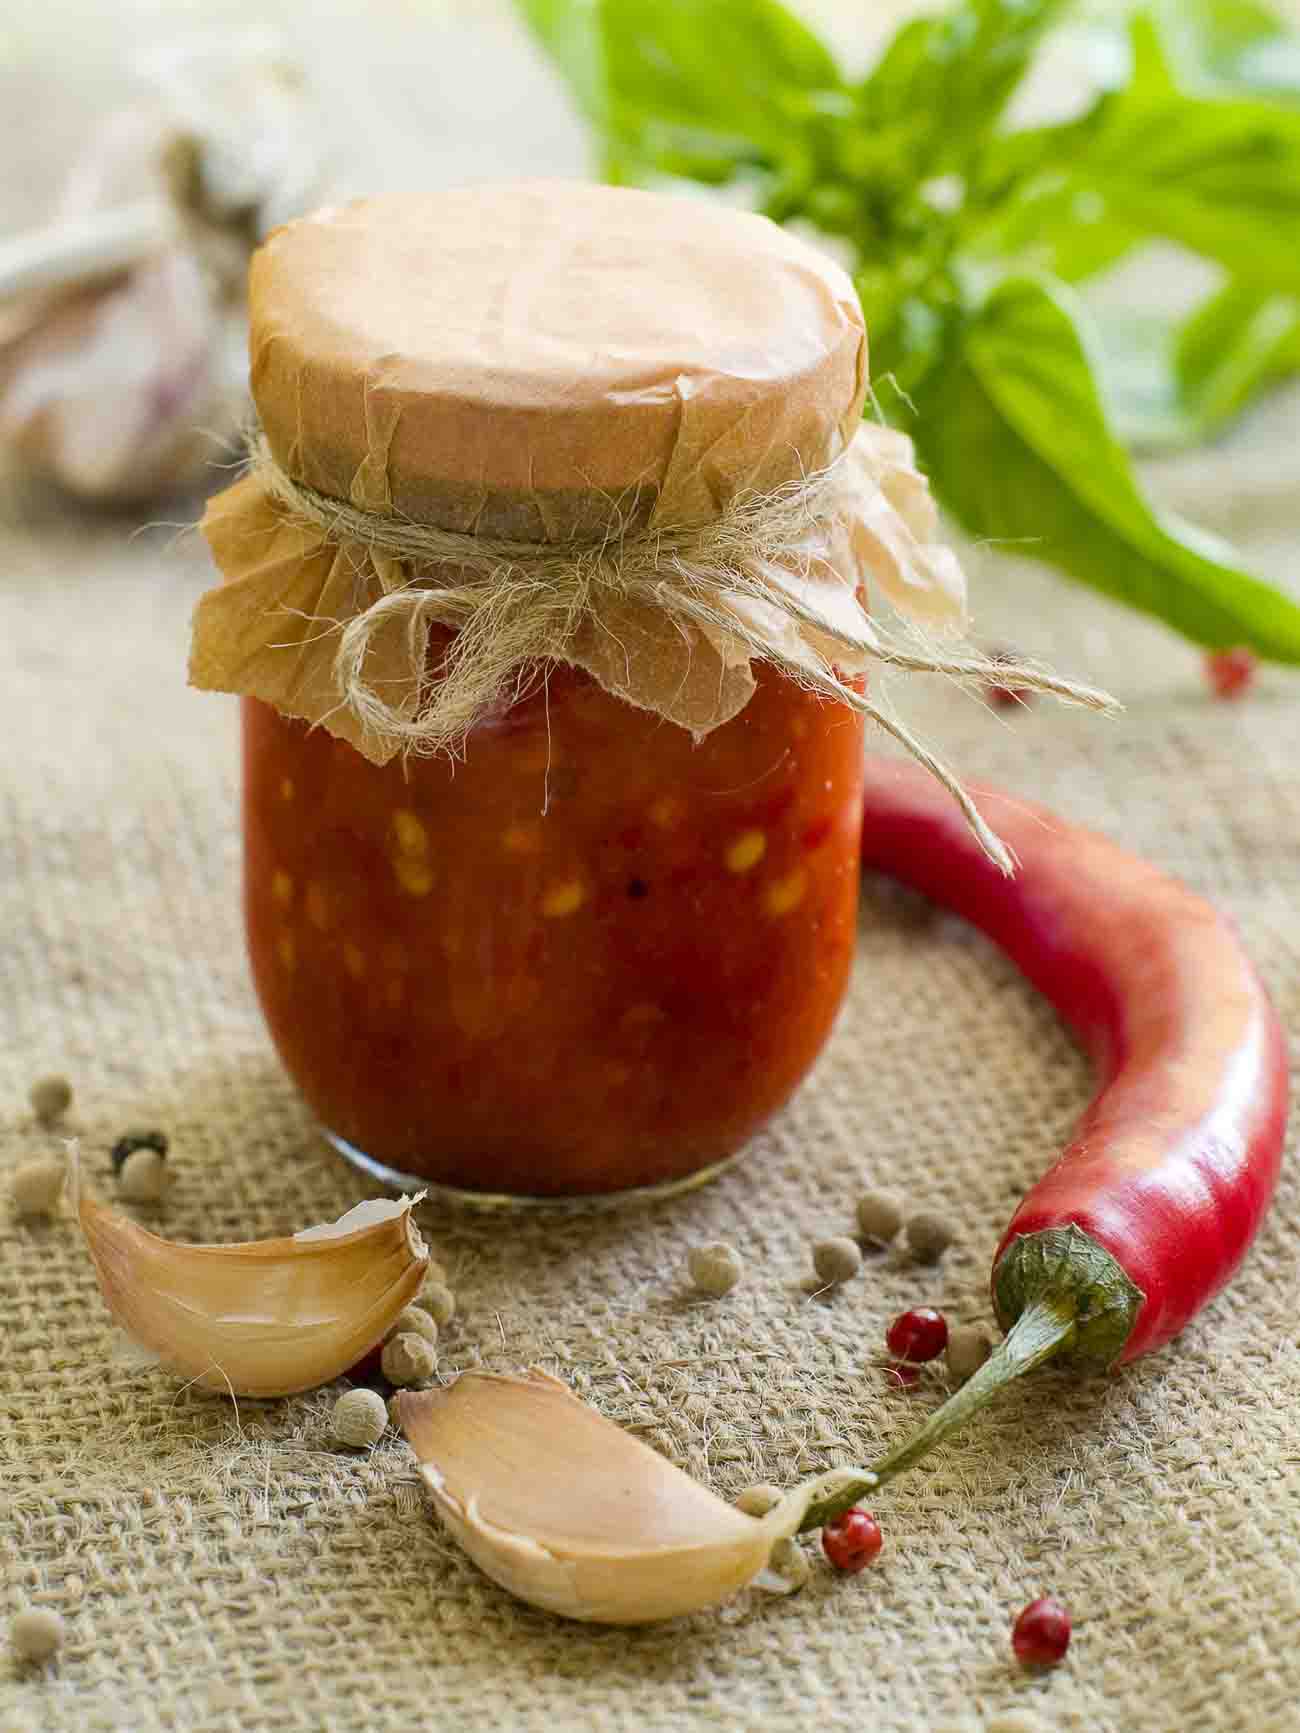 Homemade Red Chilli Garlic Sauce Recipe